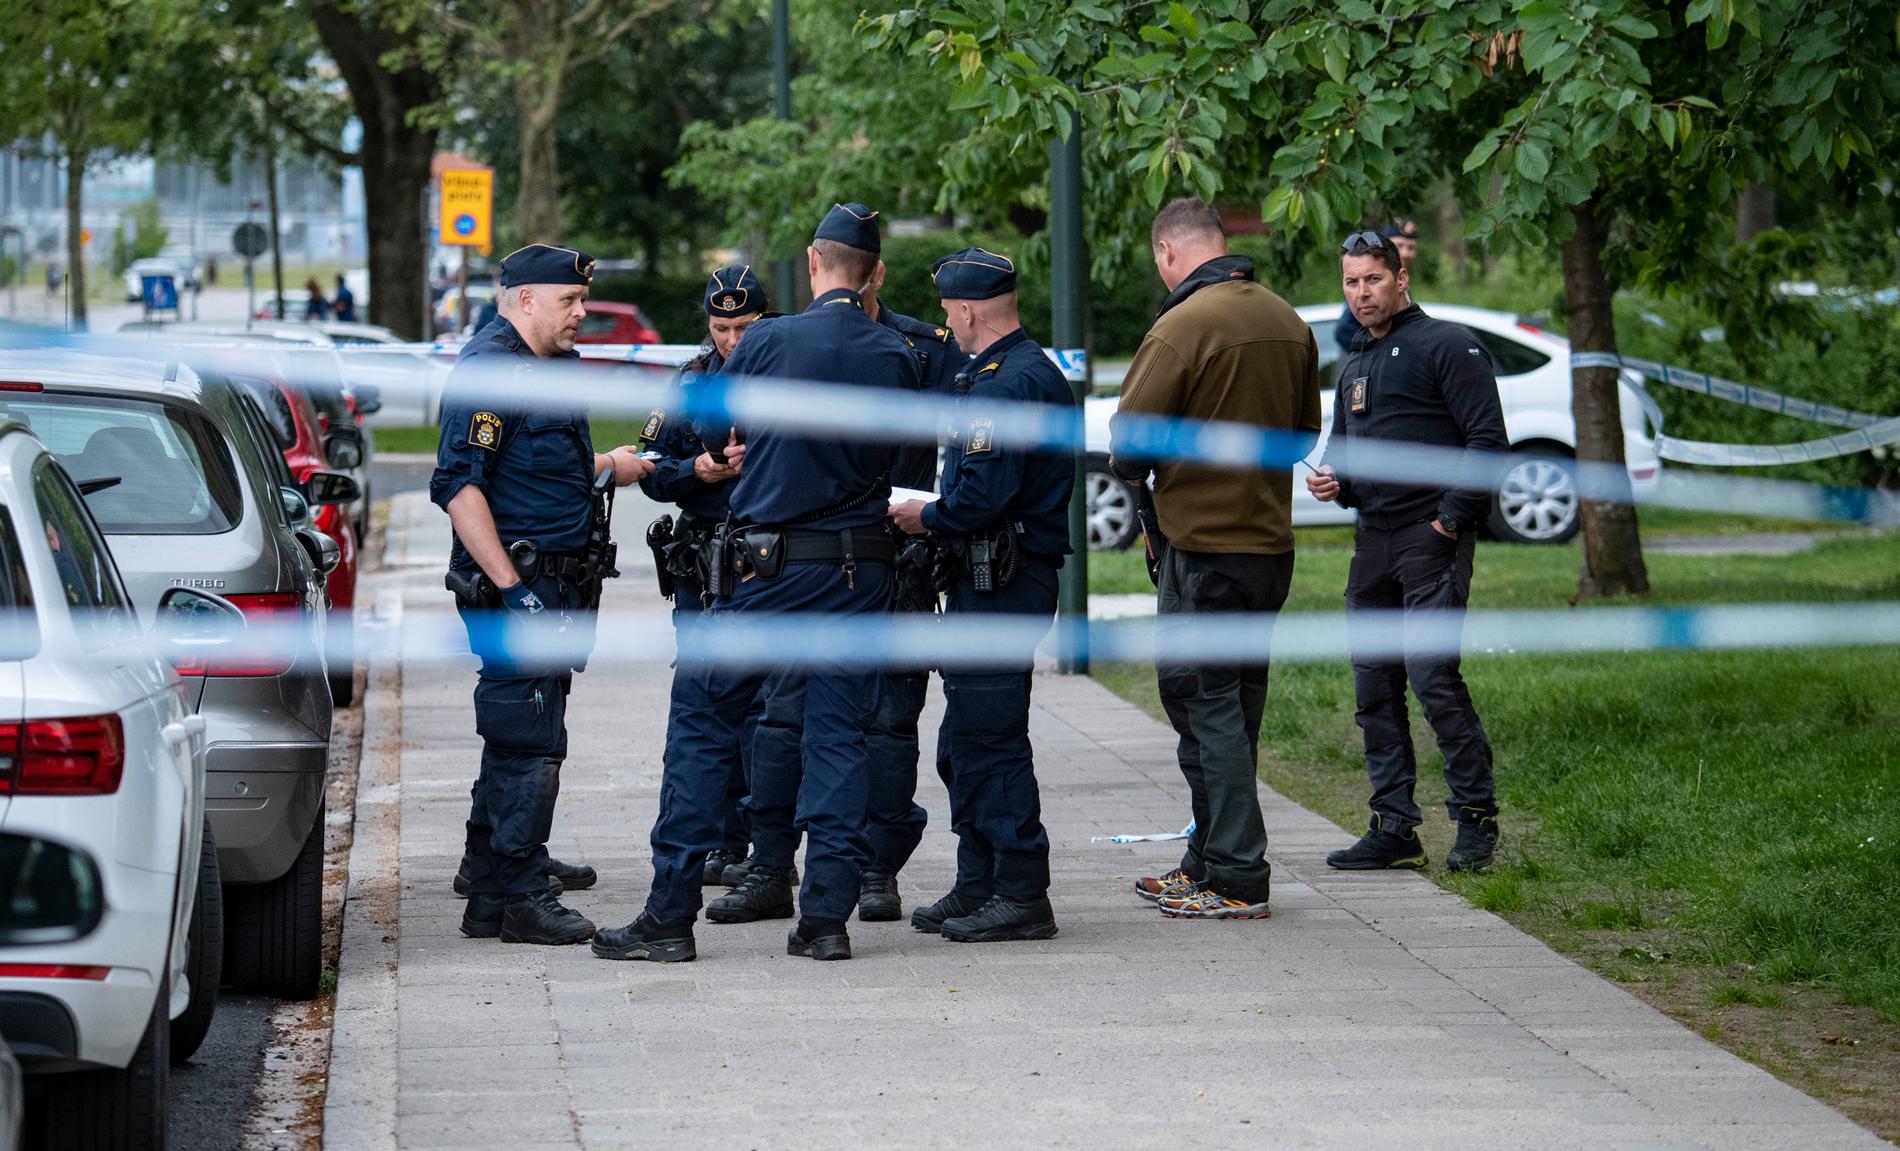 En man i 20-årsåldern hittades skjuten i Malmö efter ett larm om skottlossning i bostadsområdet Nya Bellevue i Malmö. Mannen fördes till sjukhus men senare kom beskedet att han dött av sina skador.